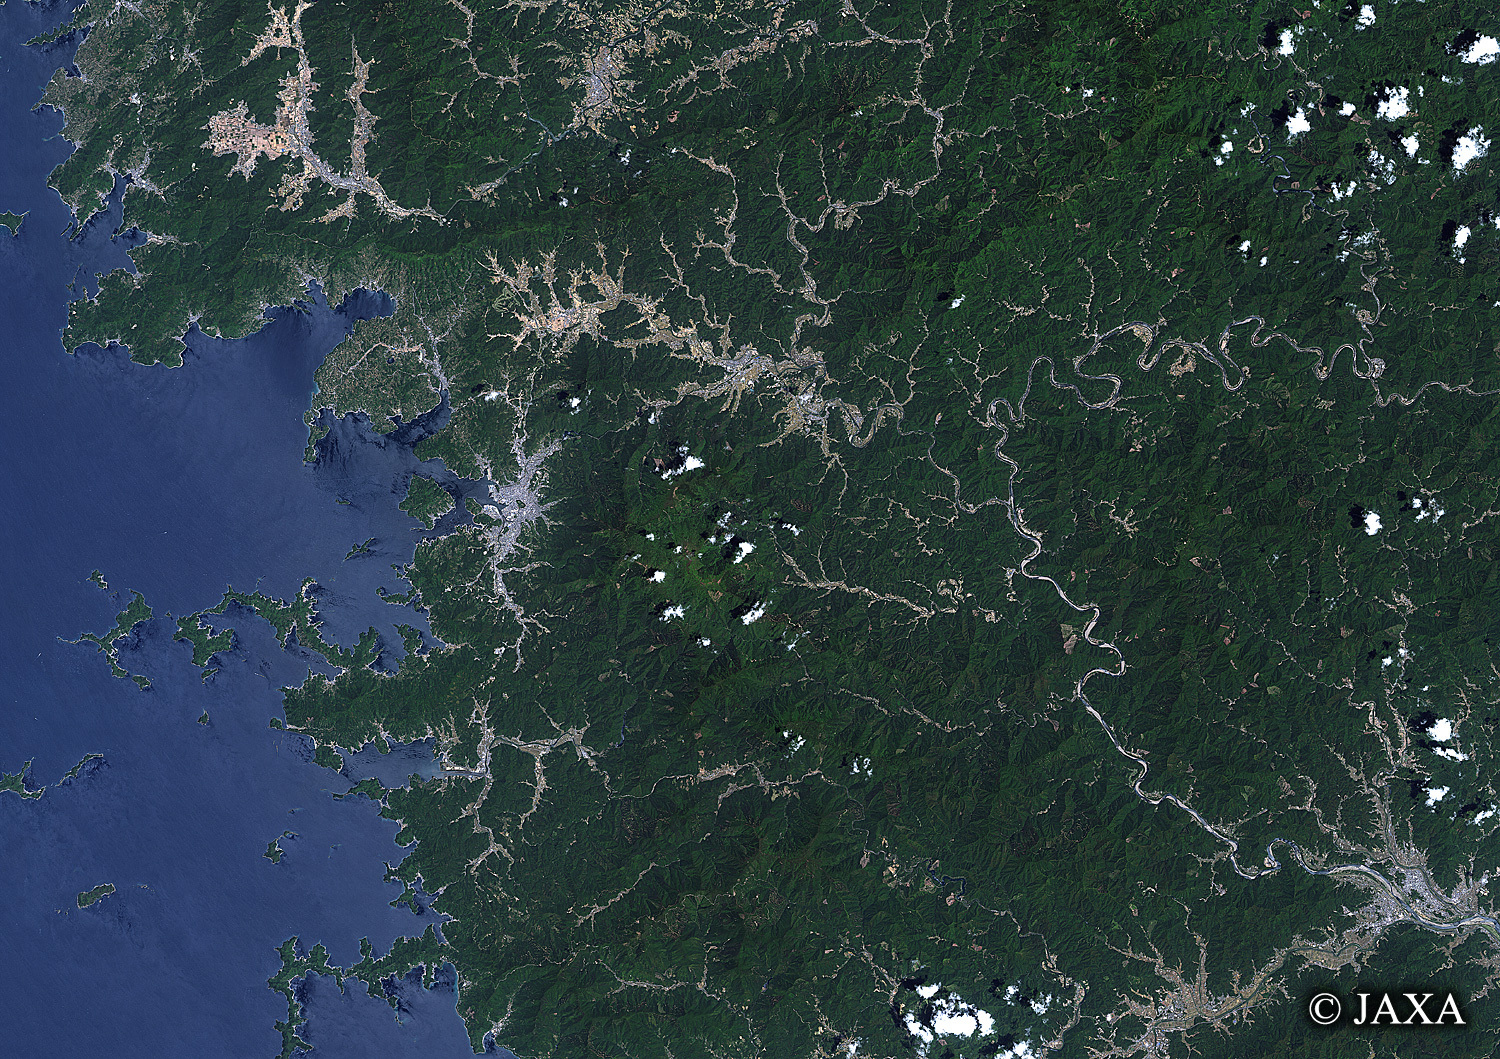 だいちから見た日本の都市 宇和島湾:衛星画像